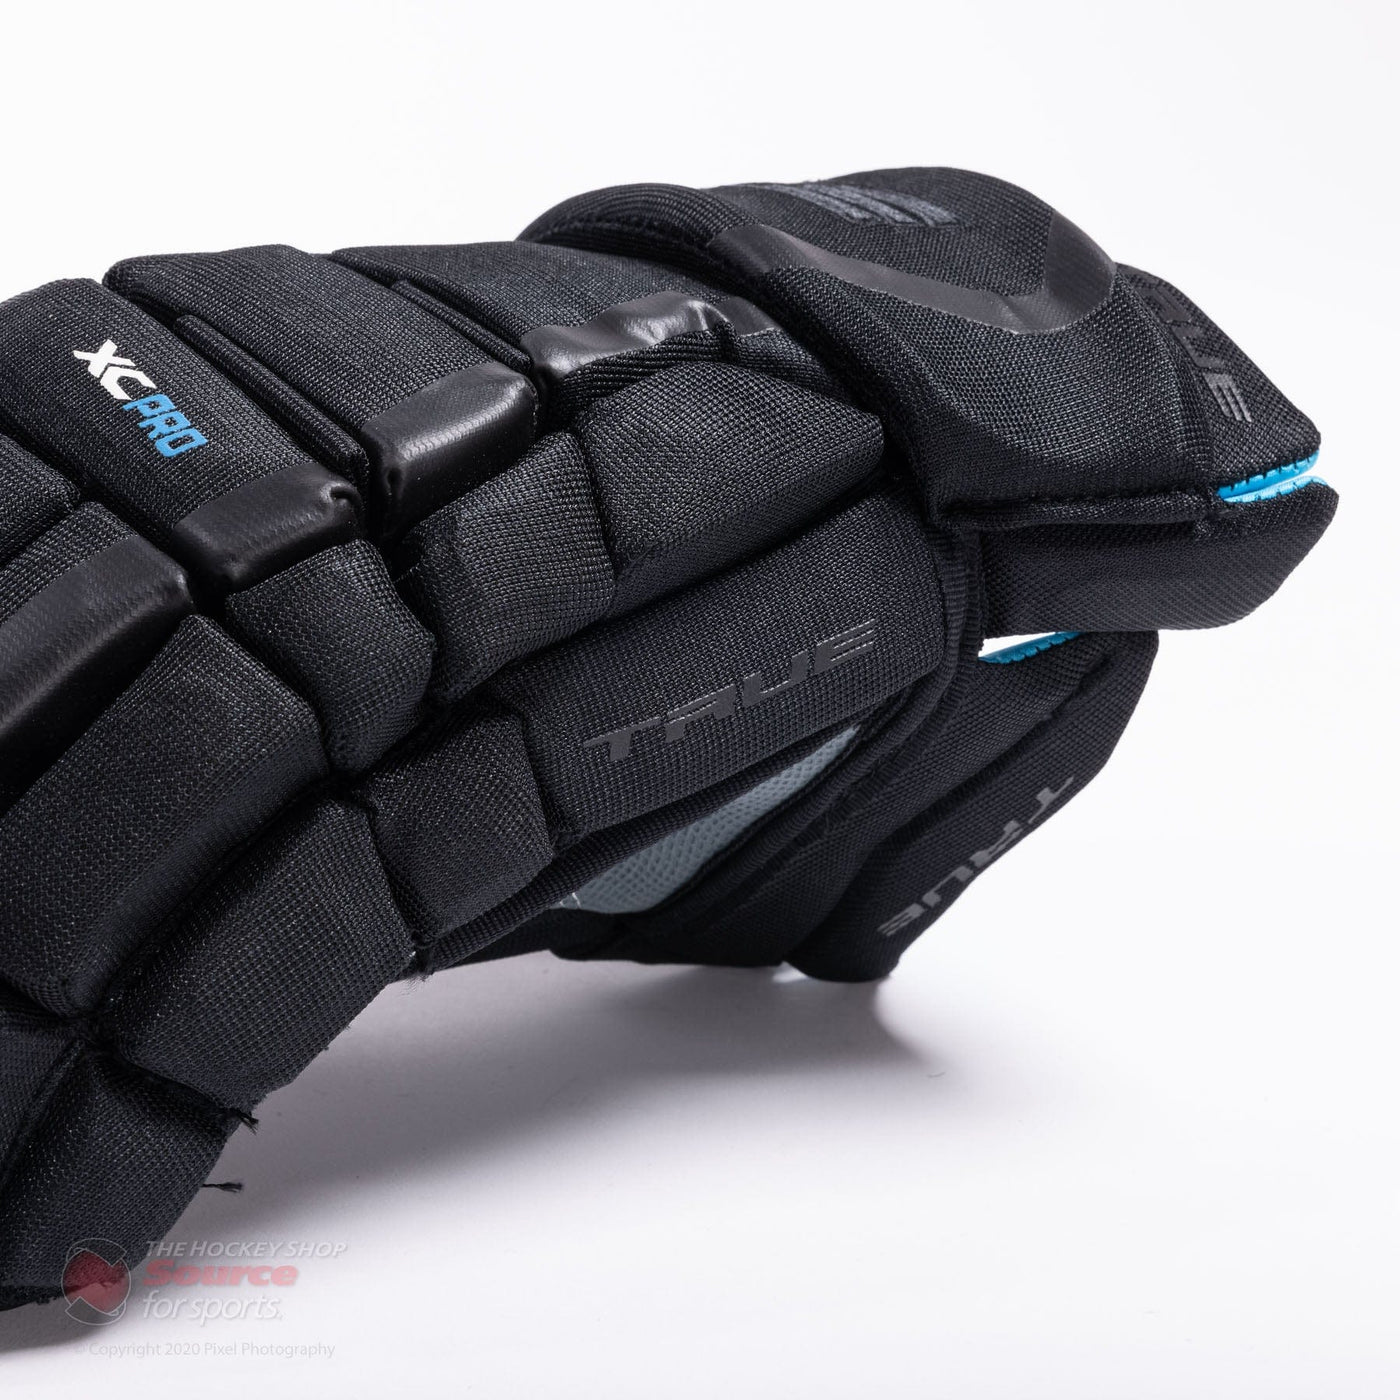 TRUE XC Pro Senior Hockey Gloves